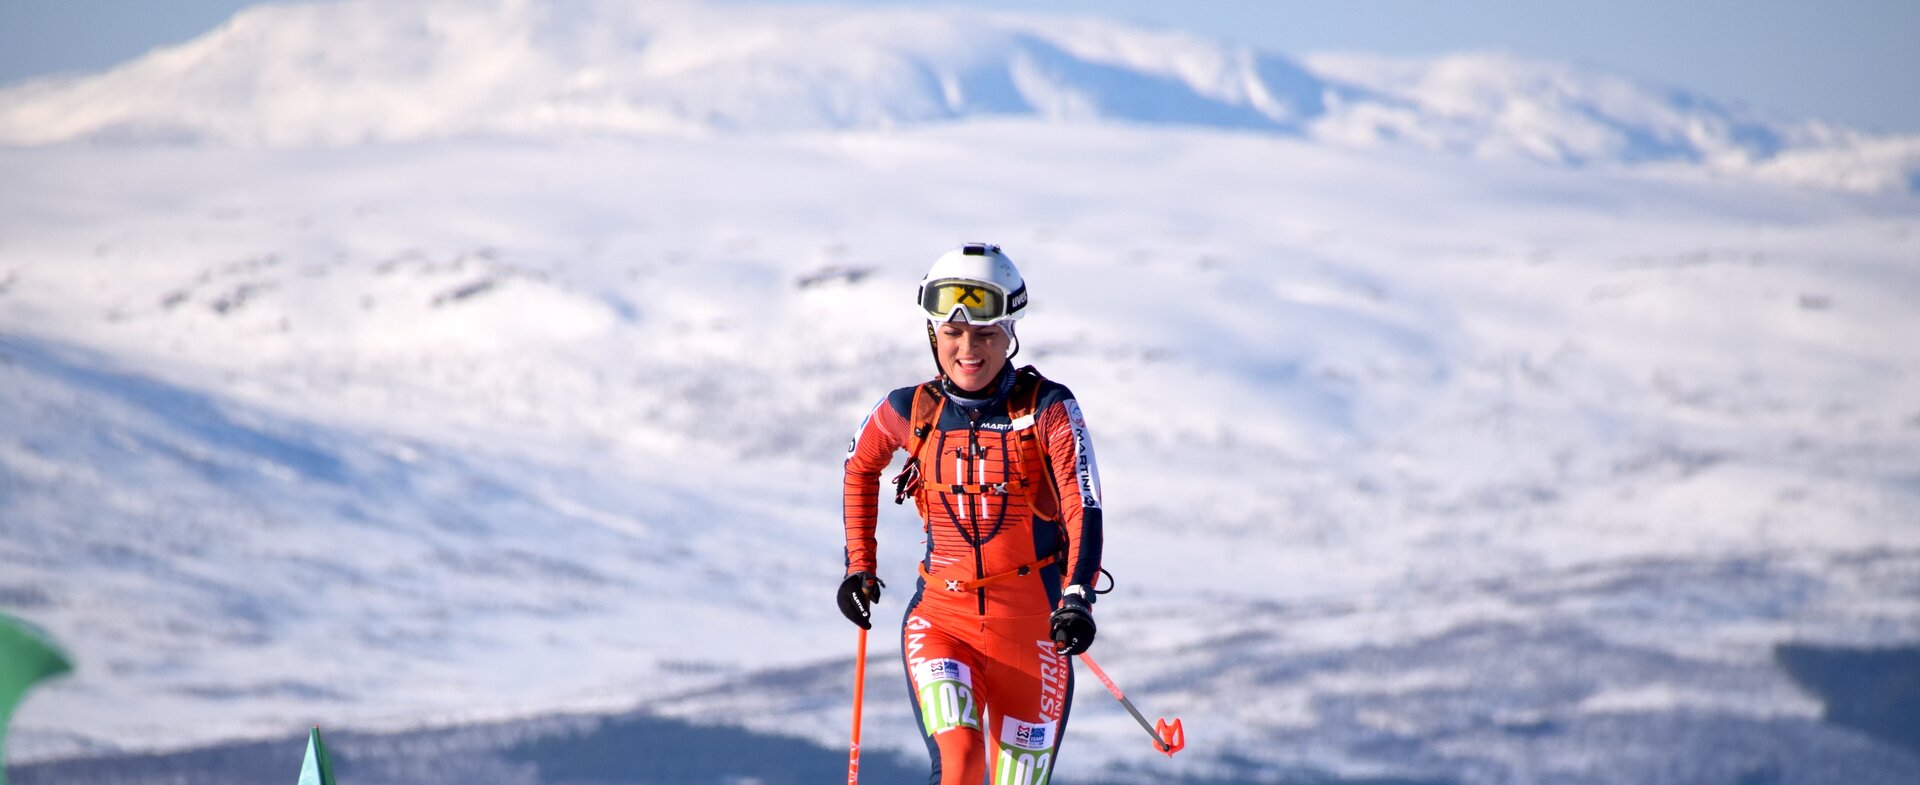 Sarah Dreier sichert sich den Vertical Gesamtweltcup Sieg | © Ski Austria - Weigl